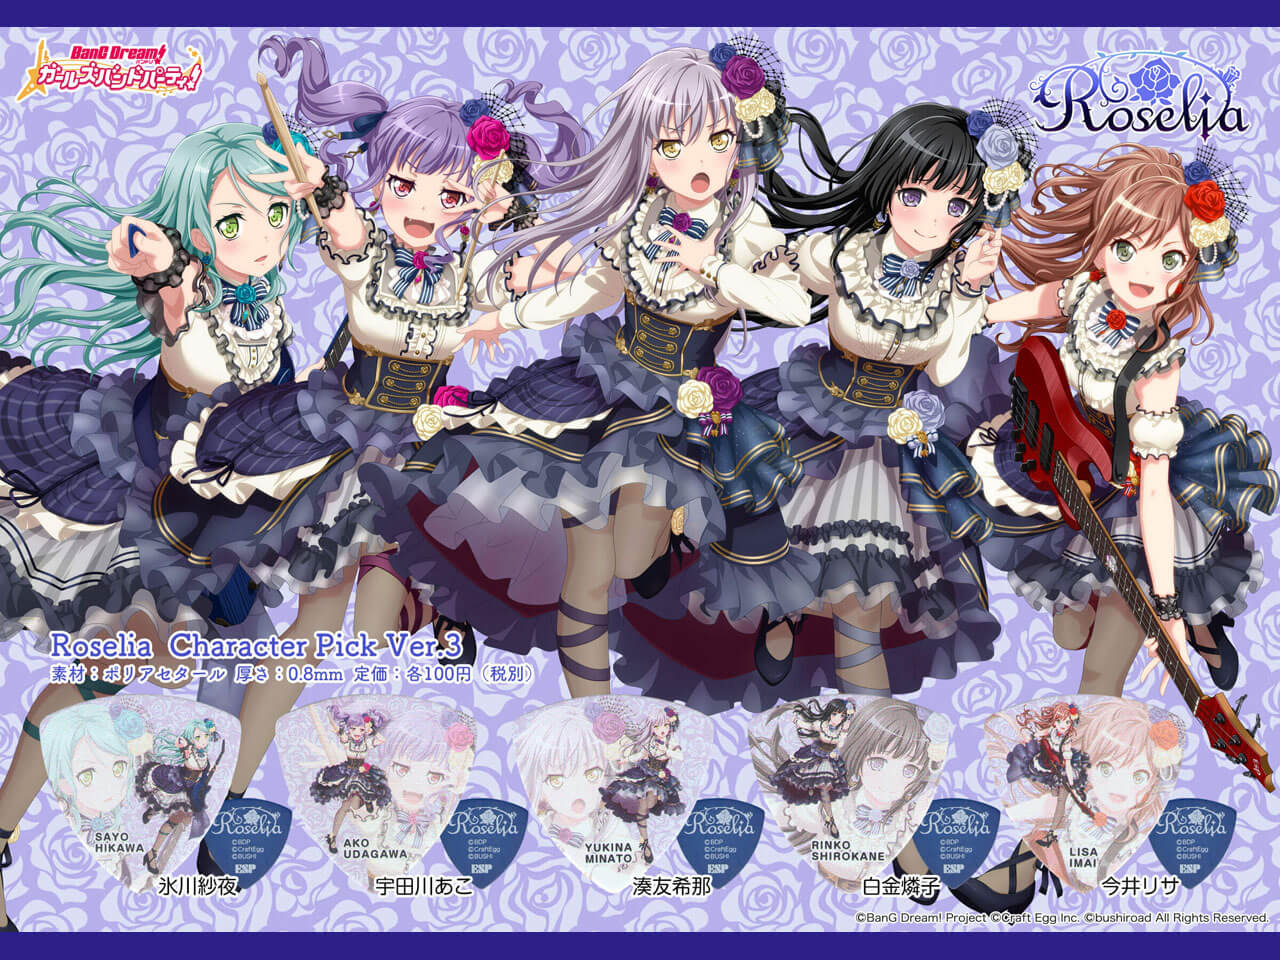 【ESP×BanG Dream!コラボピック】Roselia Character Pick Ver.3 "湊友希那"10枚セット（GBP Yukina Roselia 3）